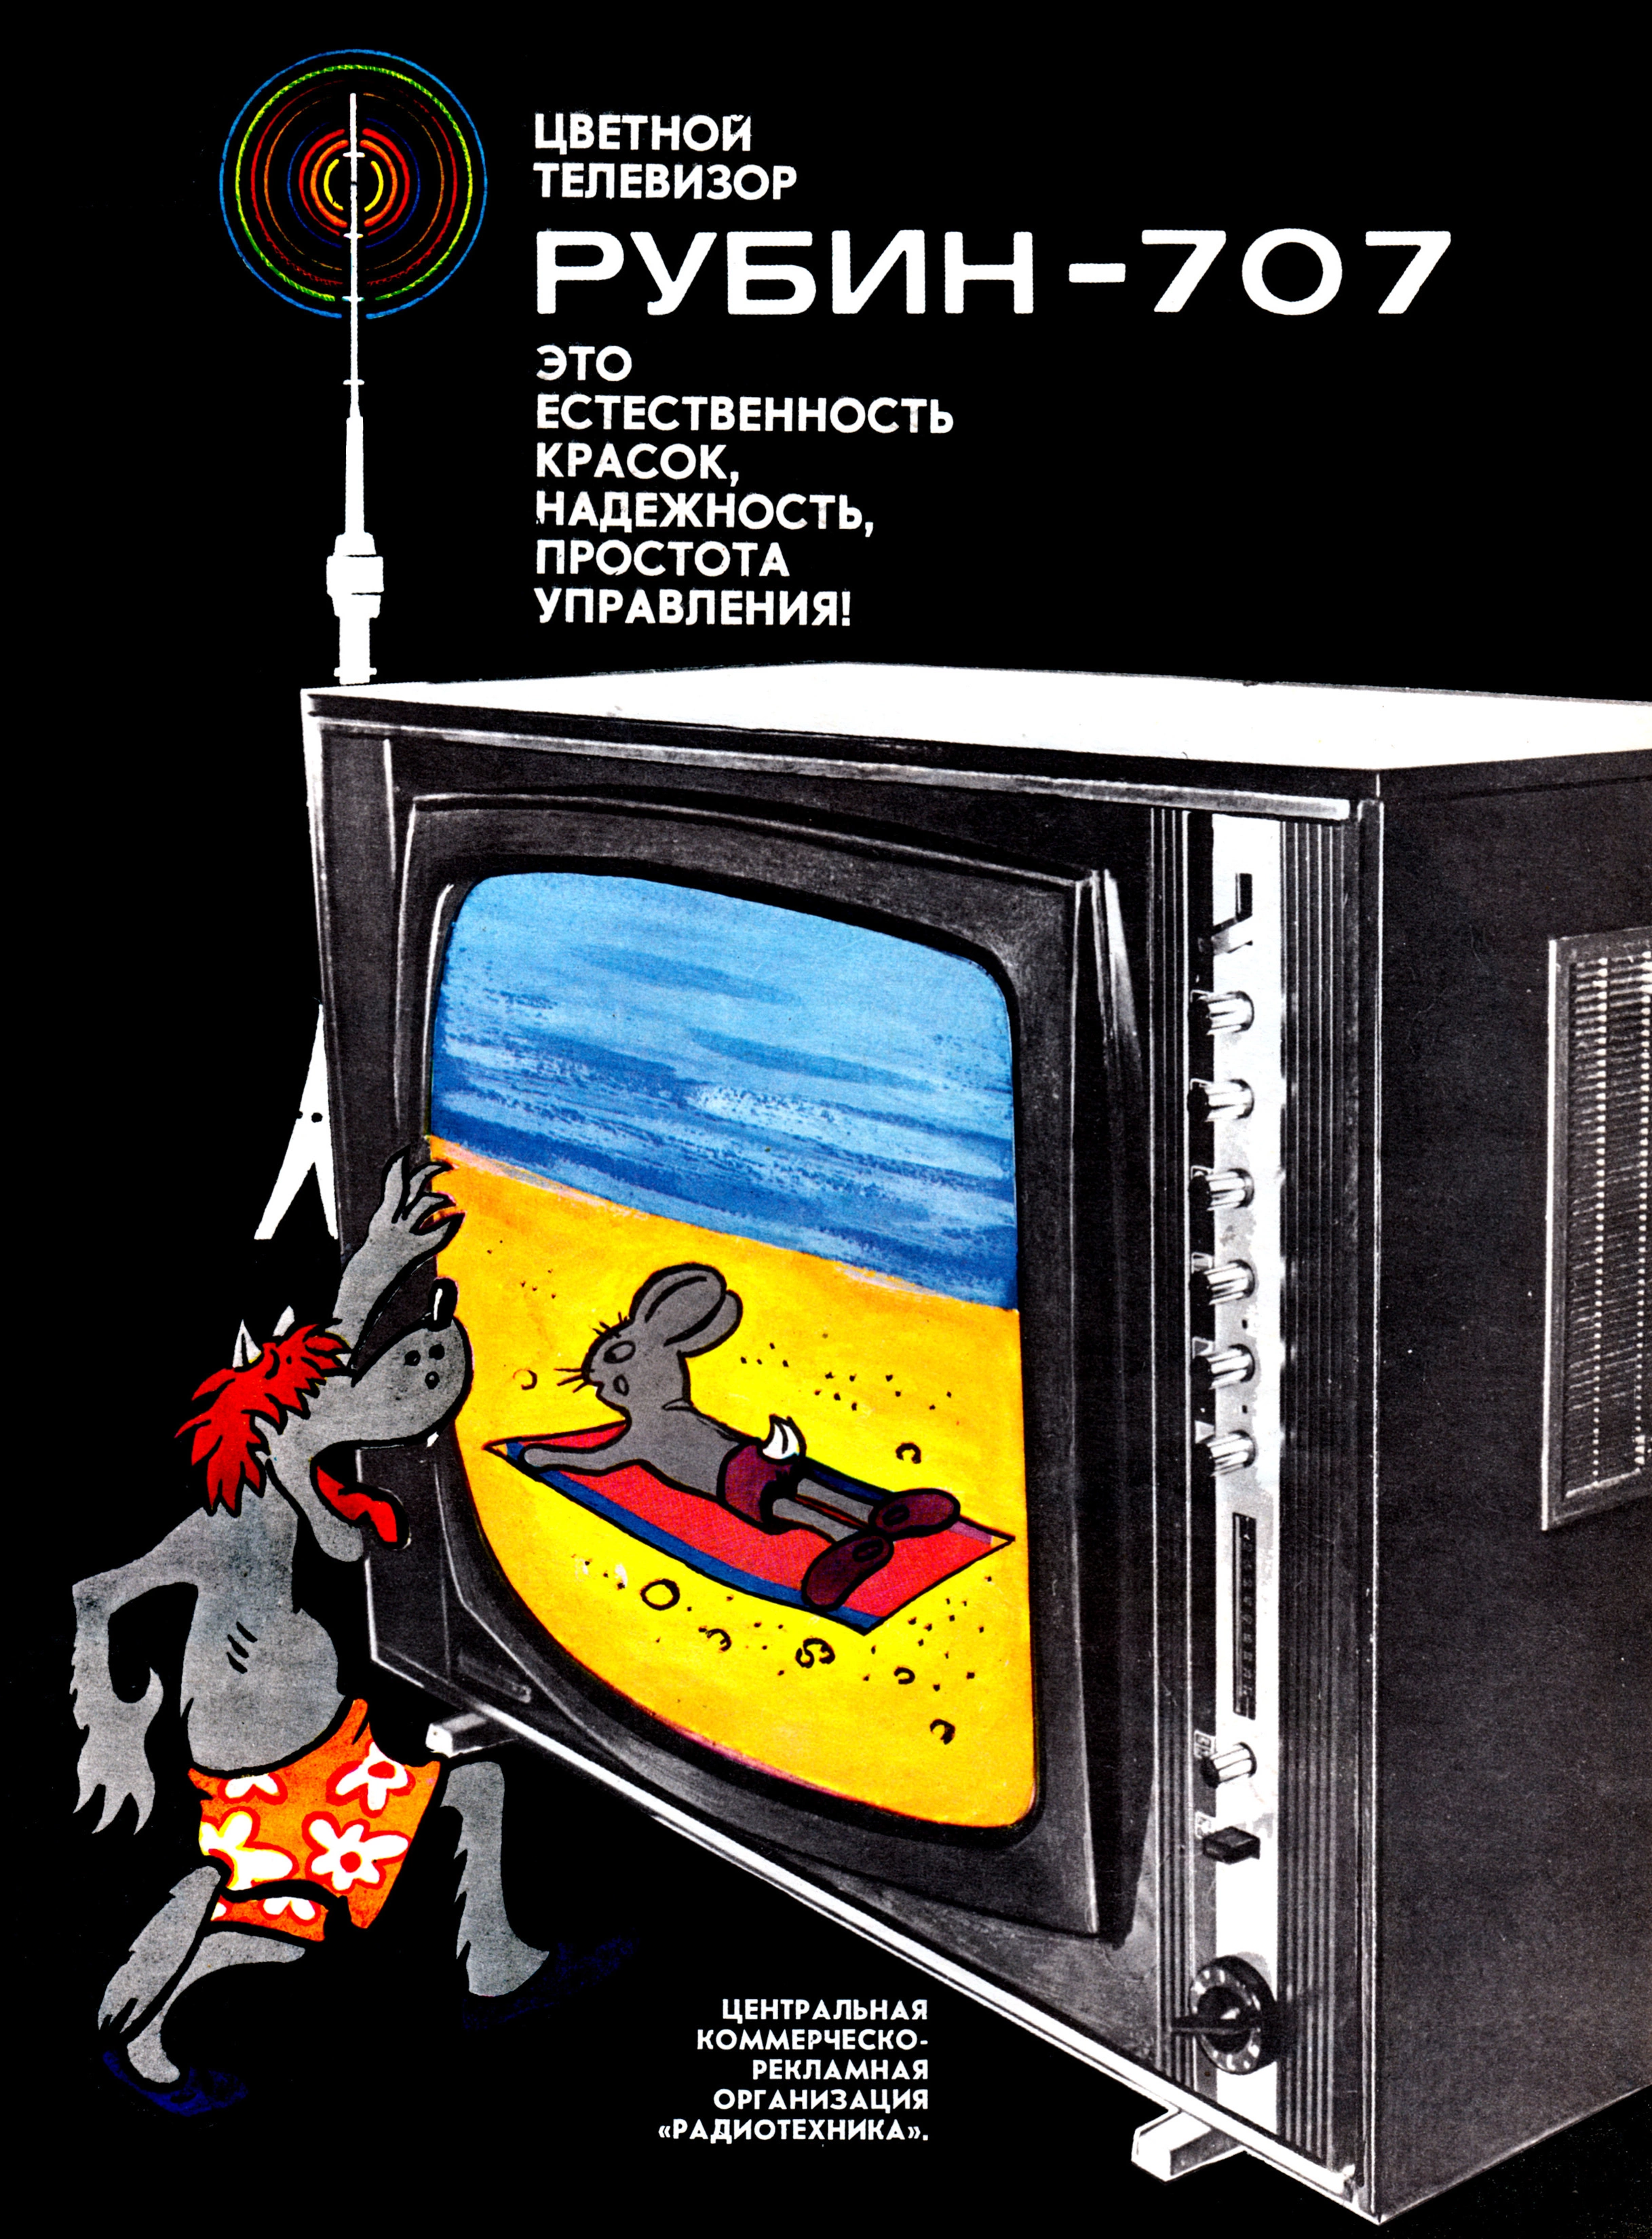 <p>Московский телевизионный завод &laquo;Рубин&raquo; начал производить одноименные телевизоры в 1956 году. Модель &laquo;Рубин-707&raquo; вышла с 1971-м и отличалась яркостью картинки и более легким&nbsp;по сравнению с предшественниками&nbsp;управлением. В Польше на заводе Unitra даже инициировали производство телевизоров Rubin 707p, воспользовавшись советской лицензией. Рекламировали достижение советского техпрома его фактические ровесники&nbsp;&mdash; Волк и Заяц из мультфильма &laquo;Ну, погоди!&raquo;. Реклама из журнала &laquo;Для дома и семьи&raquo; №&nbsp;4/1974</p>